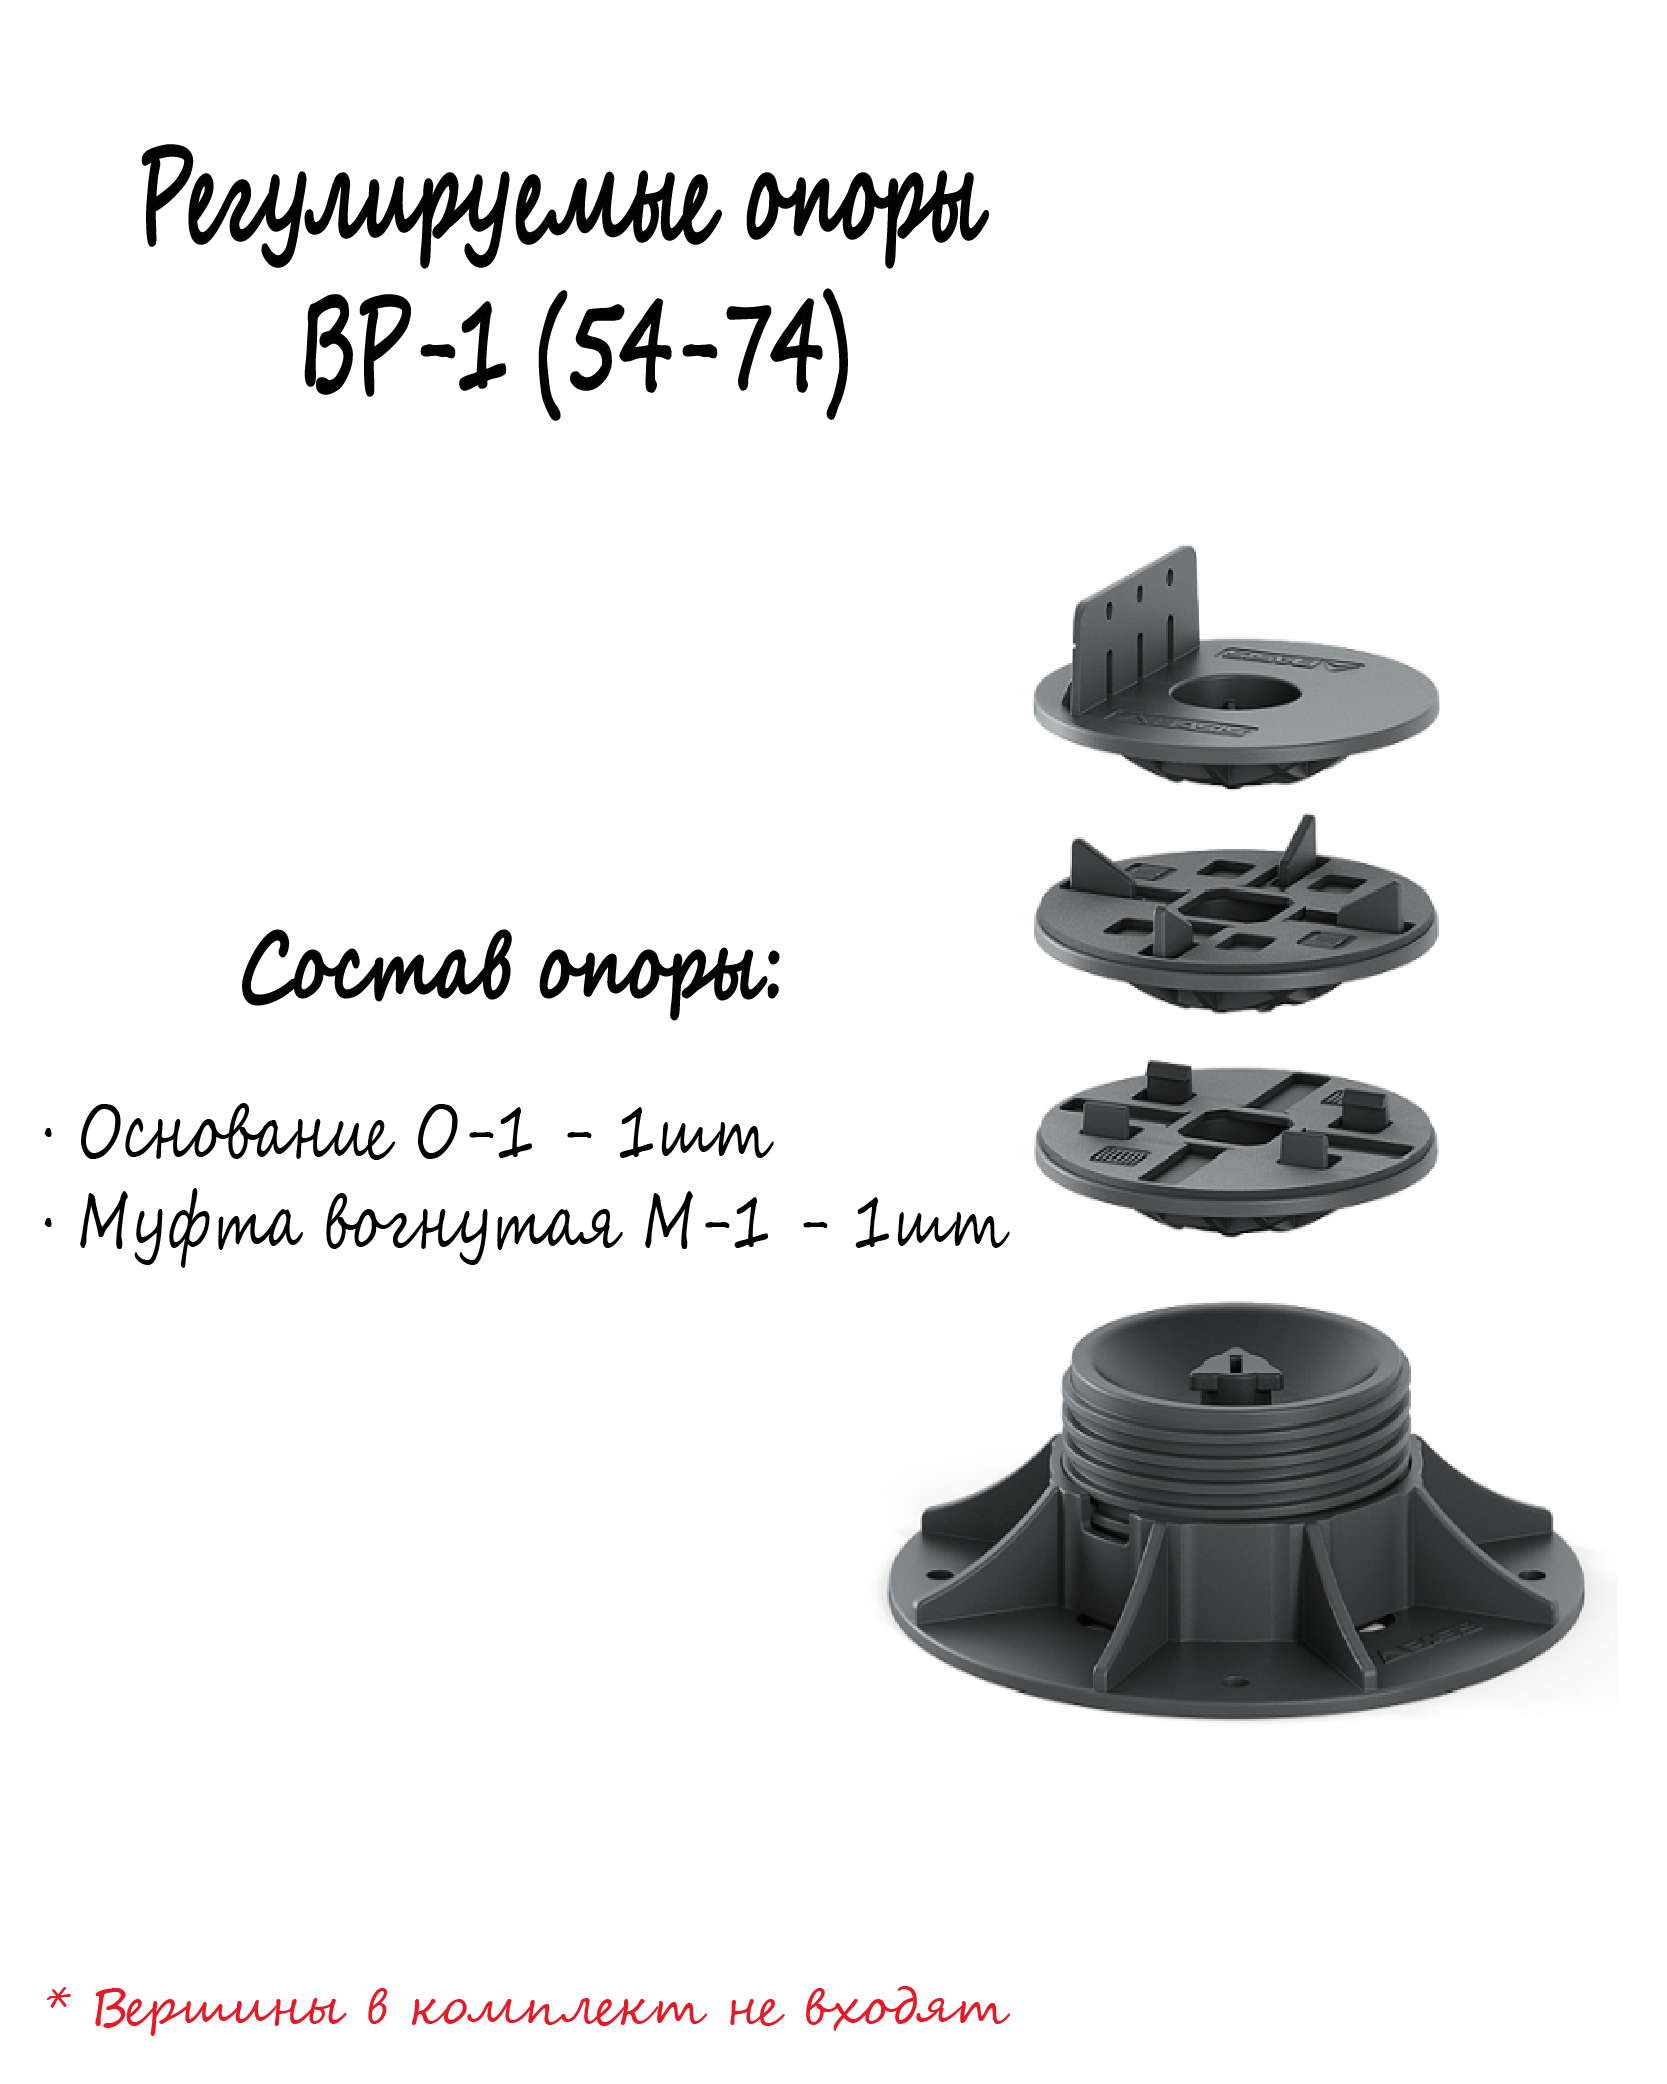 Муфта вогнутая М-1 для опоры BASIS Professional BP-1 (54-74) 1шт монтаж поверхностей, террас, беседок, площадок и т.д. - фотография № 4